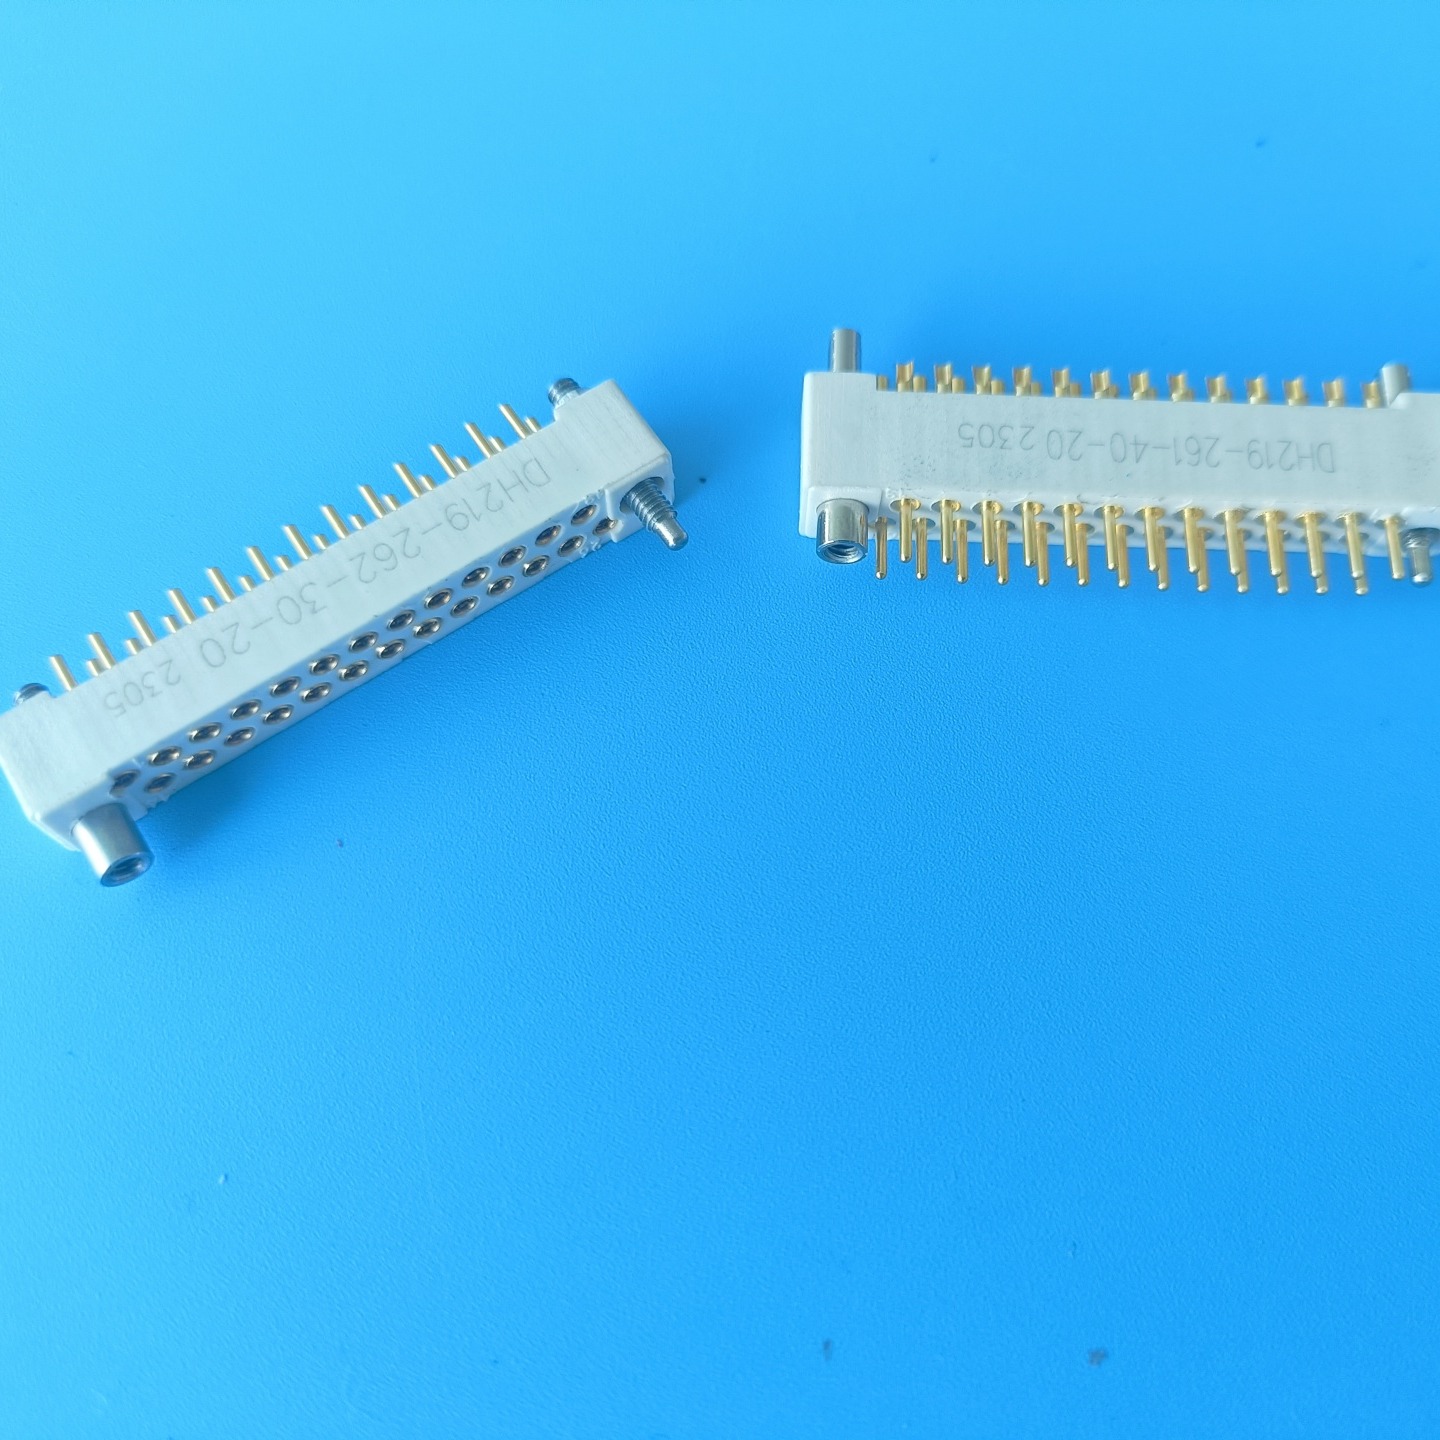 26芯线簧印制板连接器 东普电子制造 抗振动  插拔次数10000次以上  插拔柔和   插拔力小  接触可靠